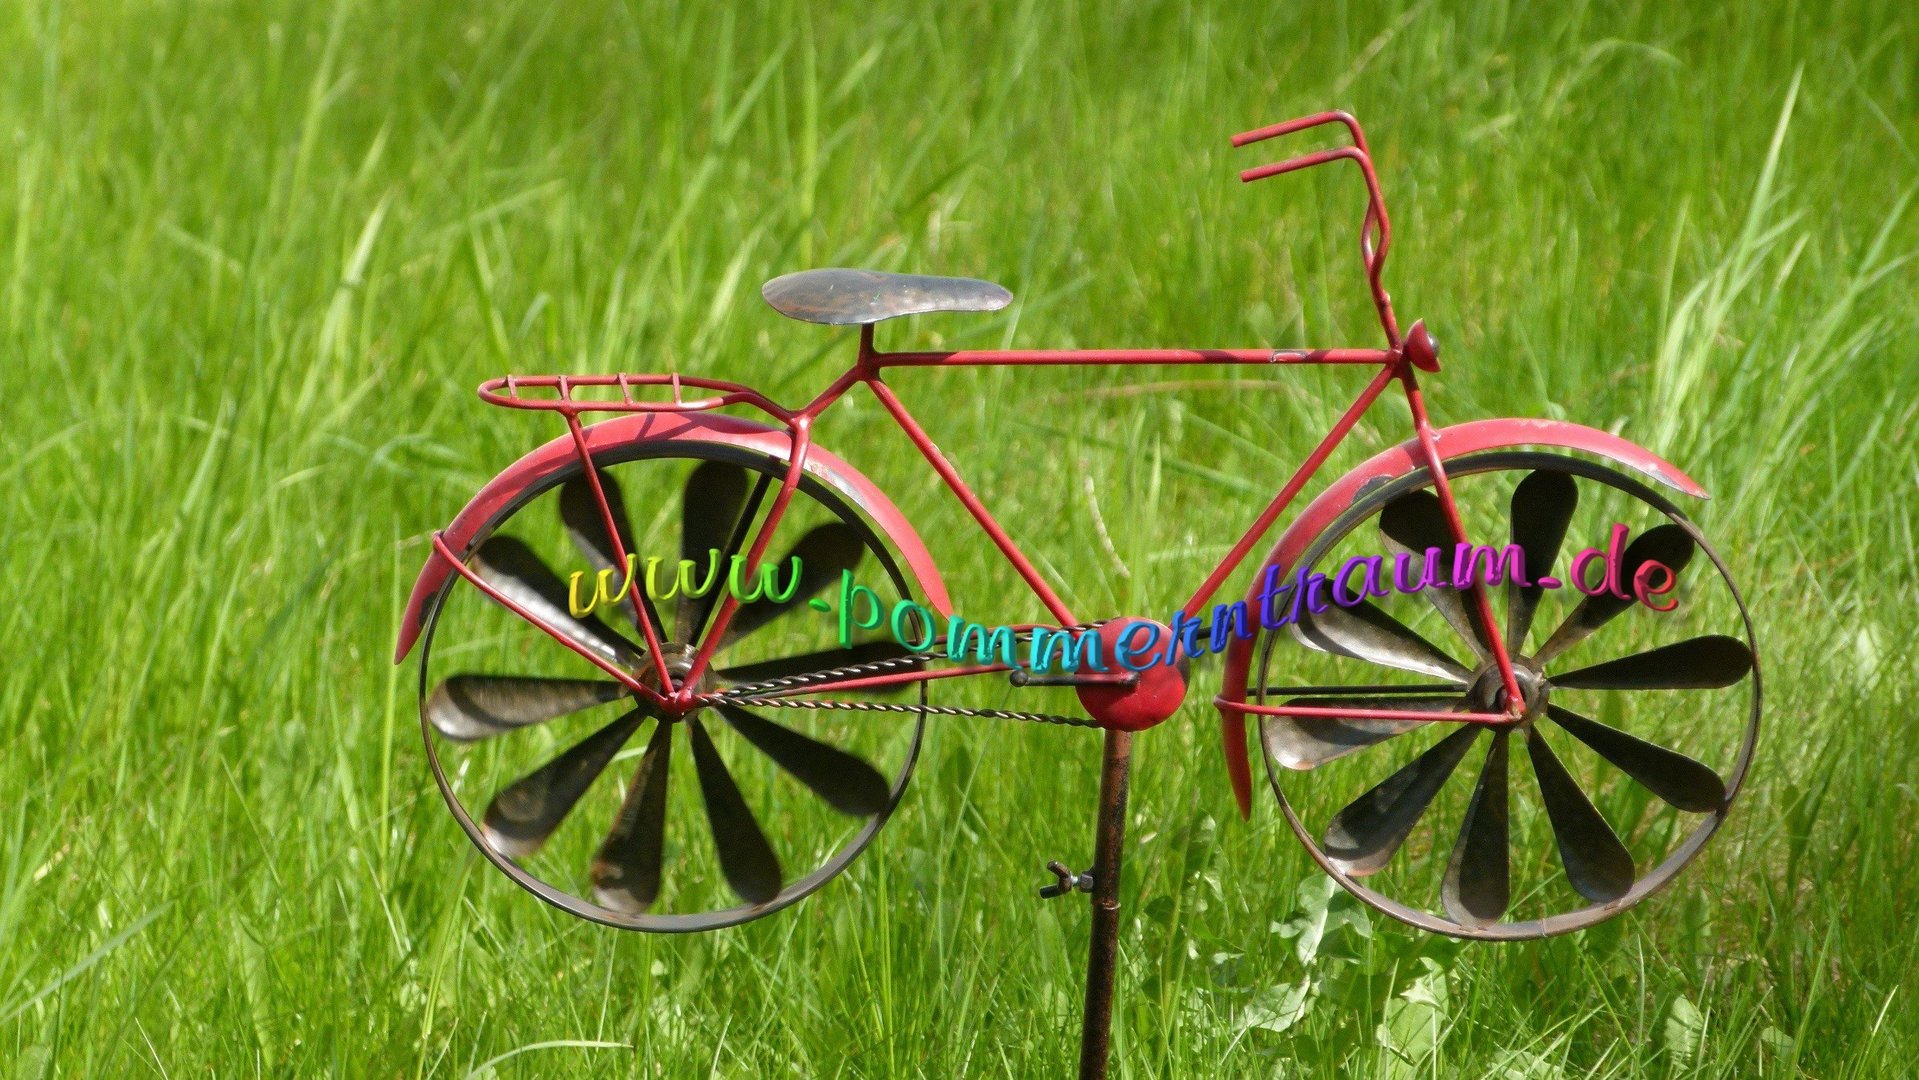 P Windspiel Metall Gartendeko Windrad Fahrrad JPG